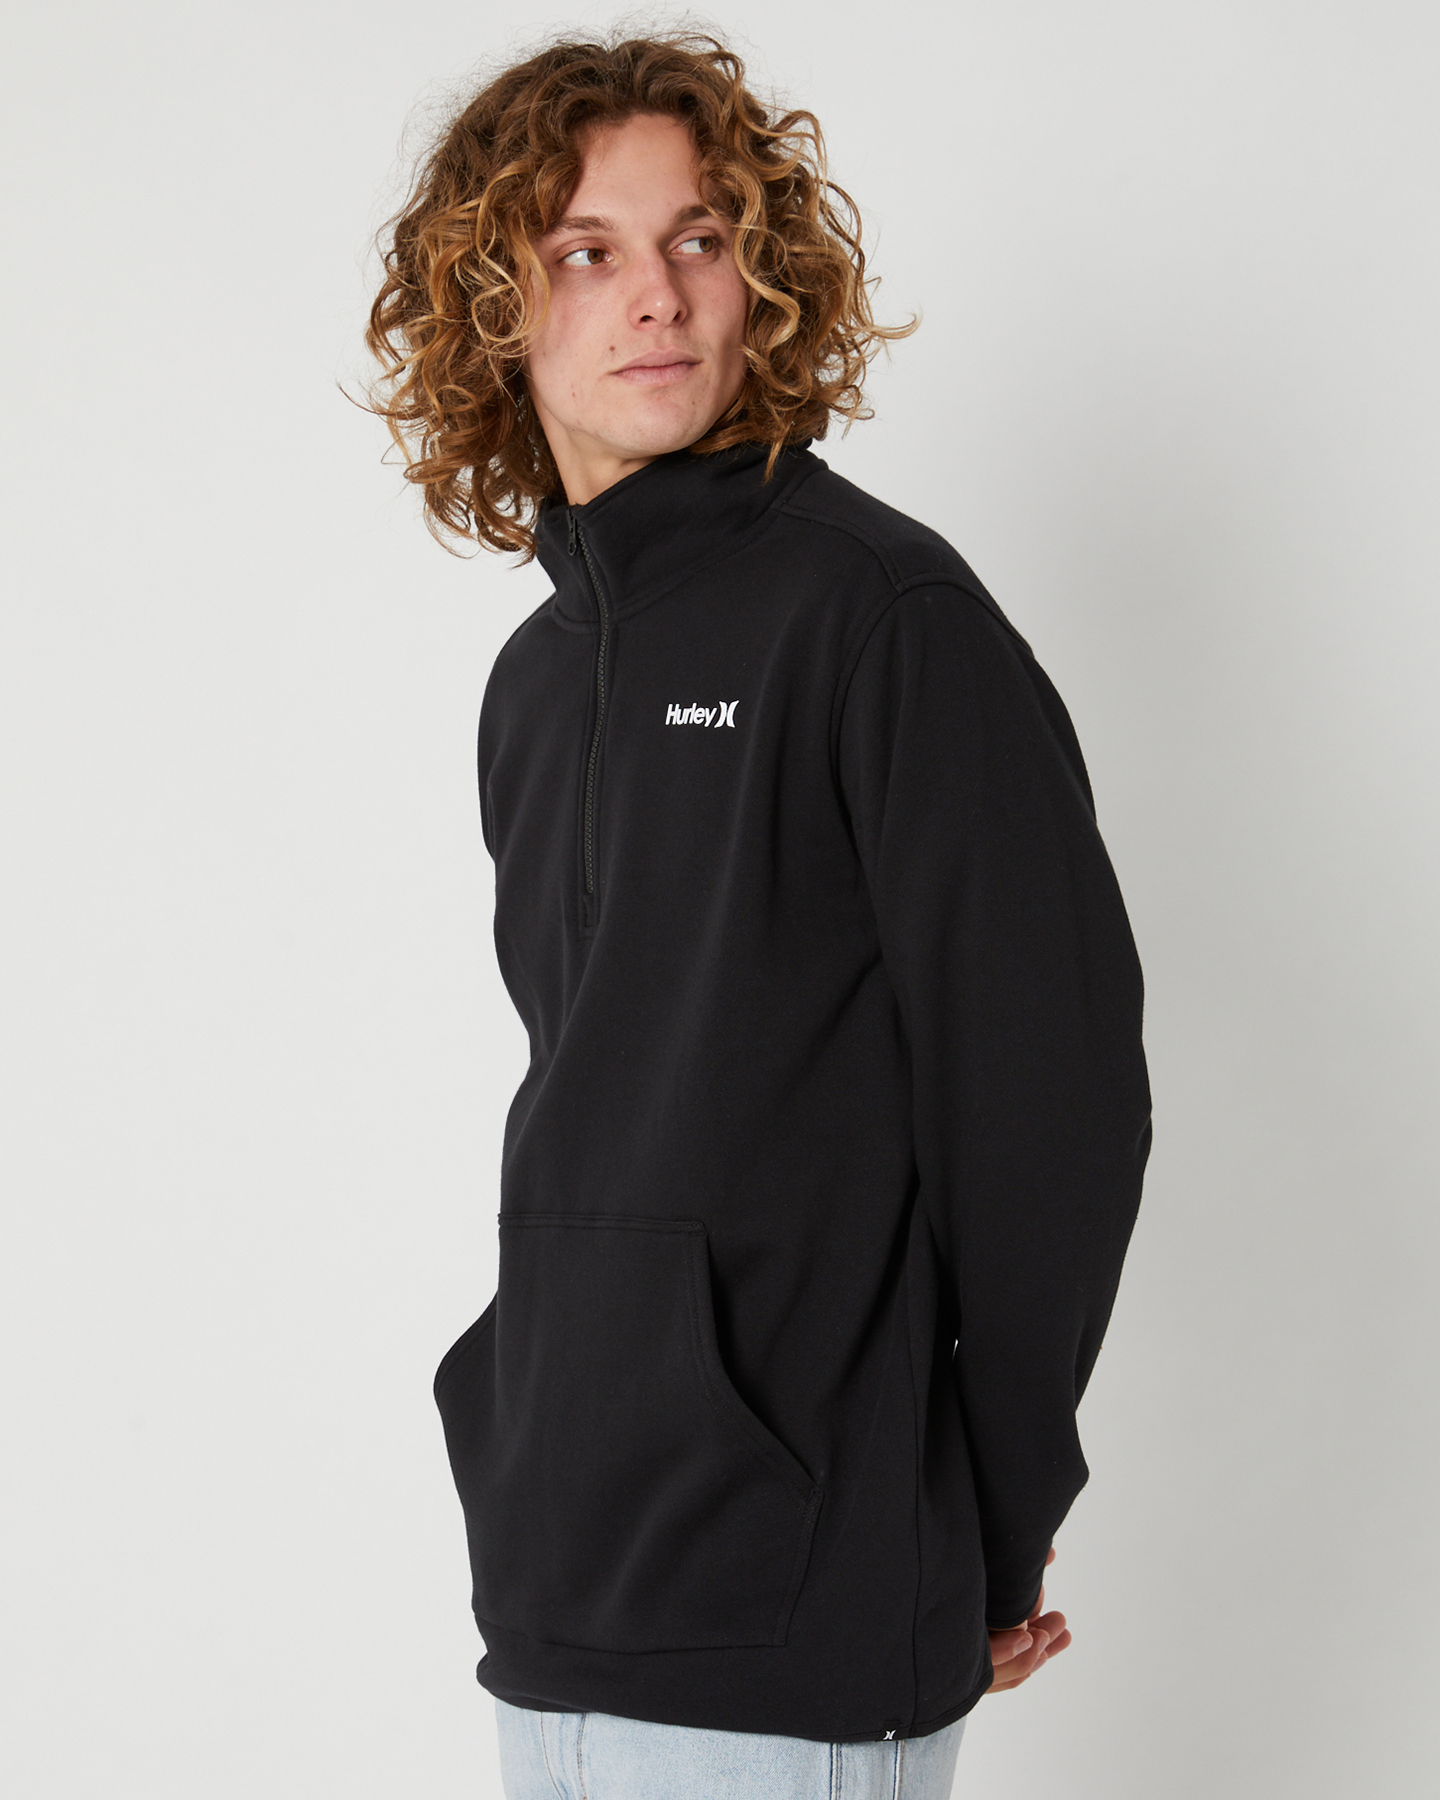 Hurley O&O Quarter Zip Fleece - Black | SurfStitch